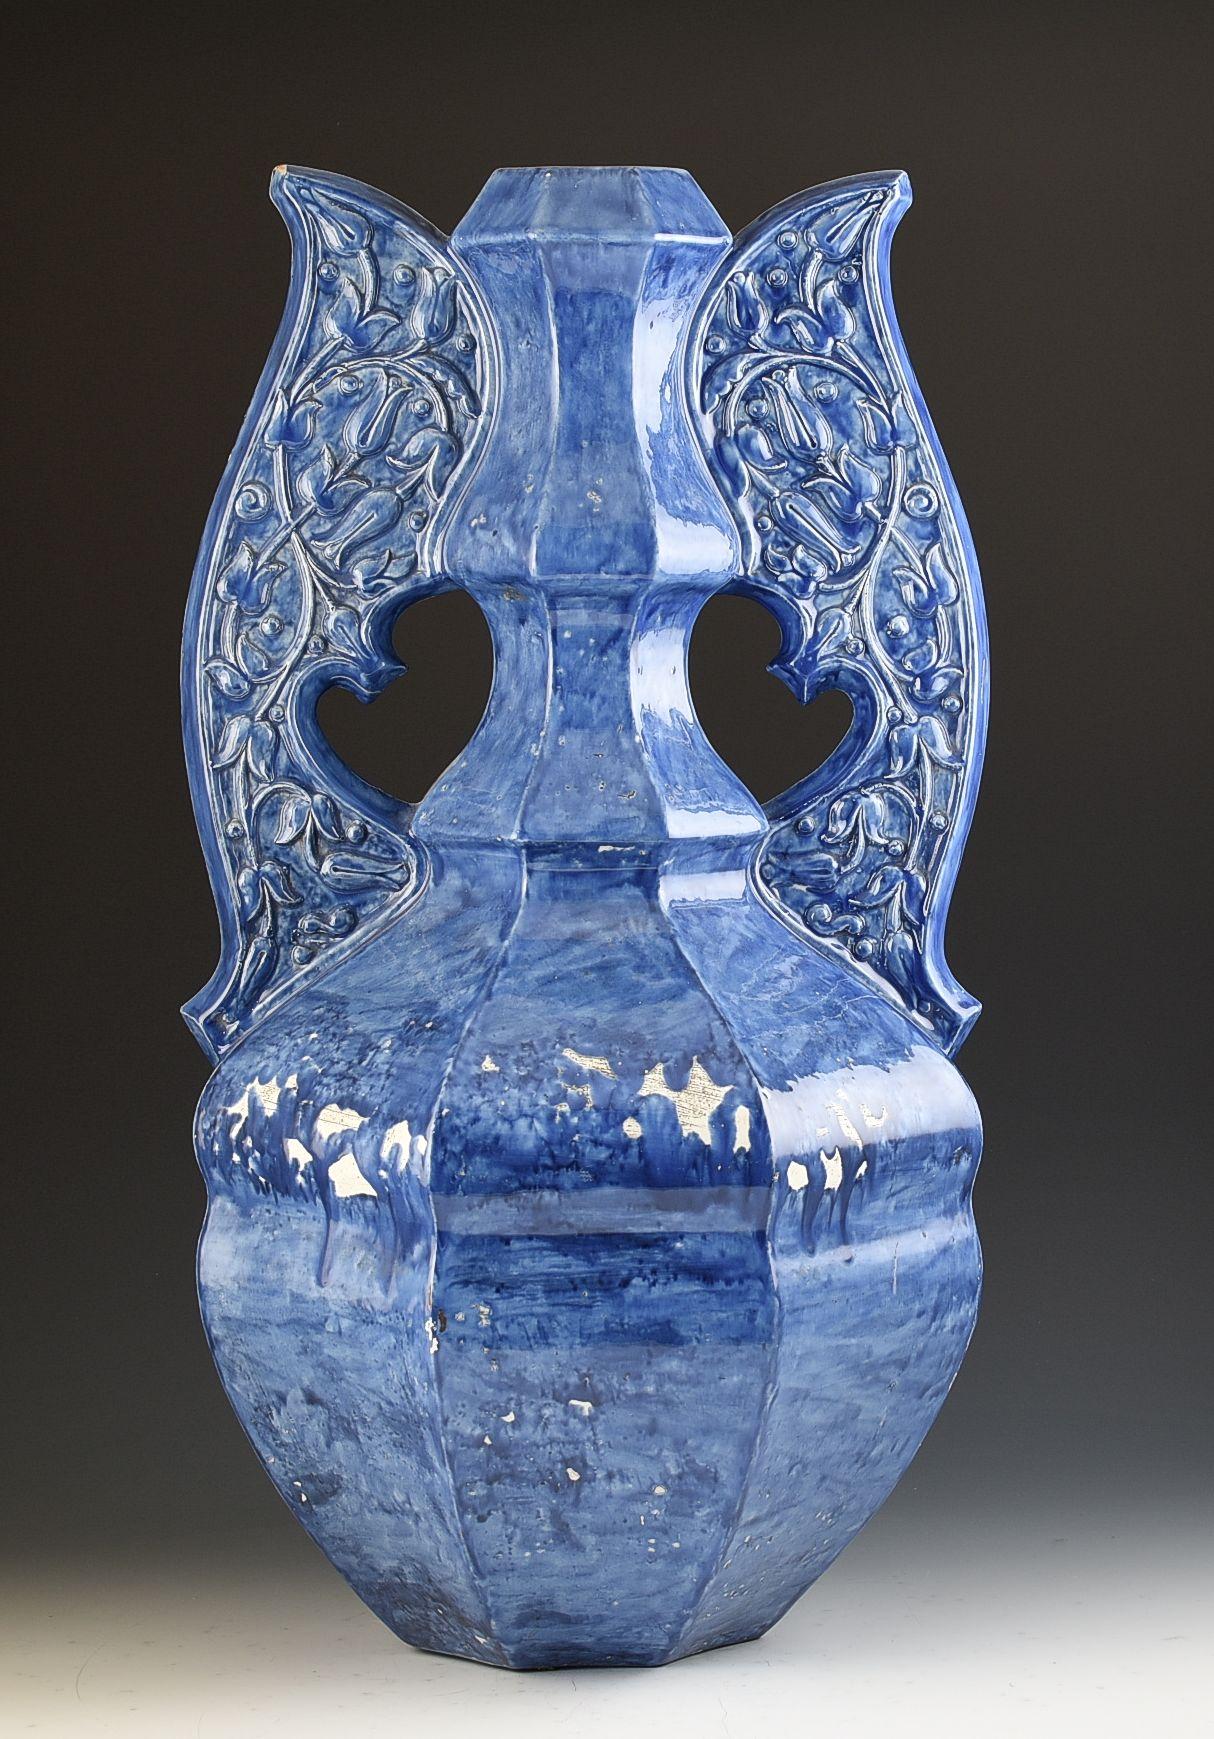 Eine seltene und großformatige Alhambra-Vase von William de Morgan. Das ist etwas, das ich noch nie gesehen habe und daher ein seltenes Modell ist. Er ist in Alhambra-Form verziert, wobei die Form und das Design offensichtlich persische Einflüsse